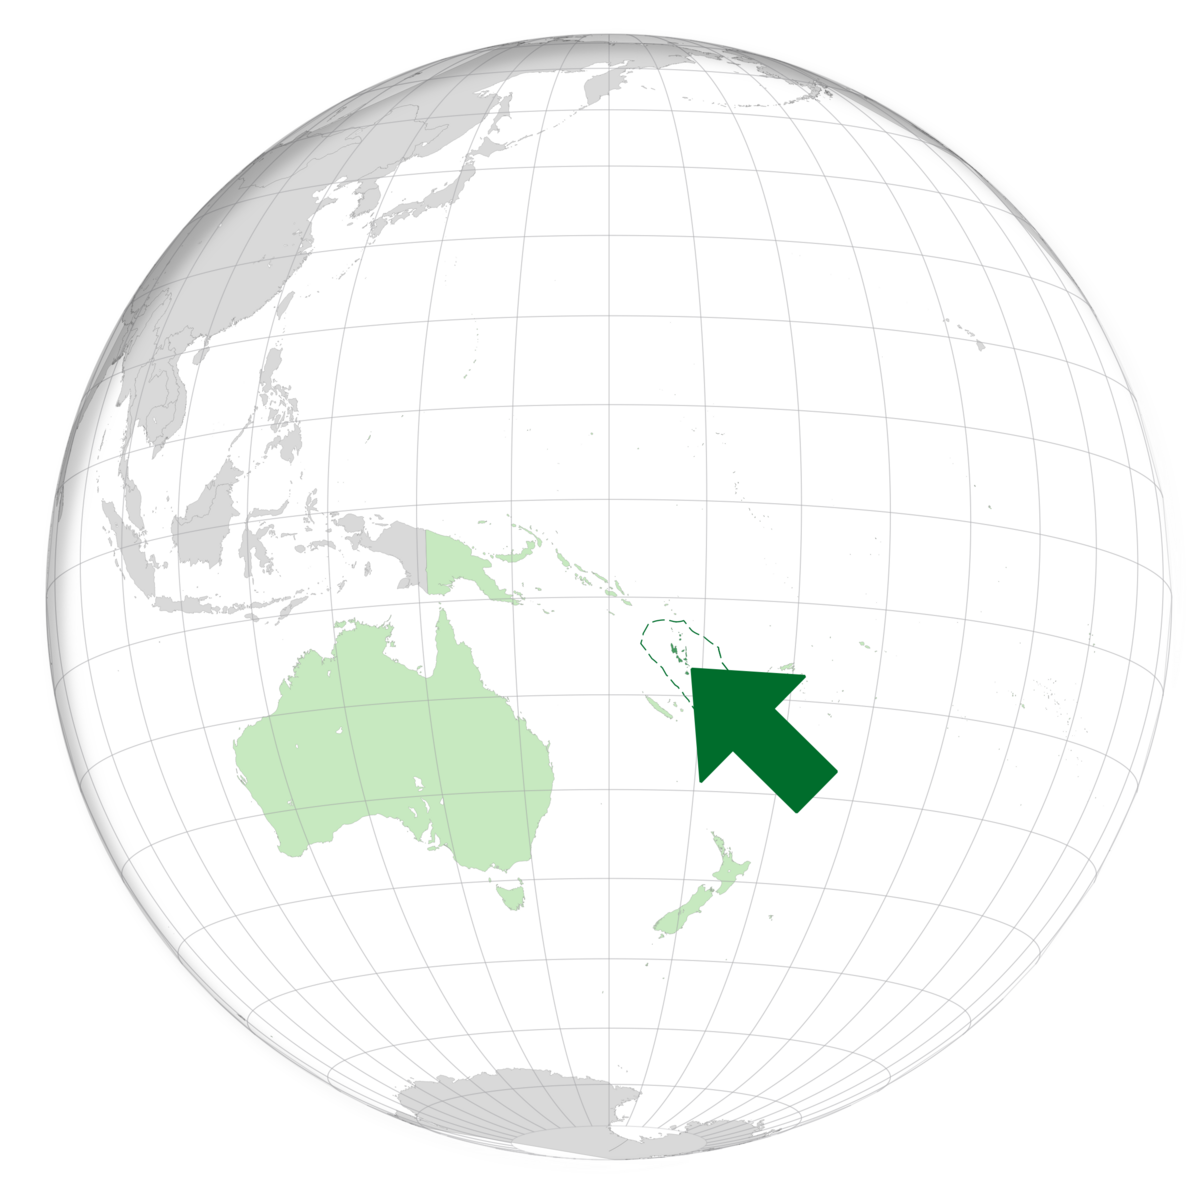 plassering av Vanuatu på jordkloden. Kart